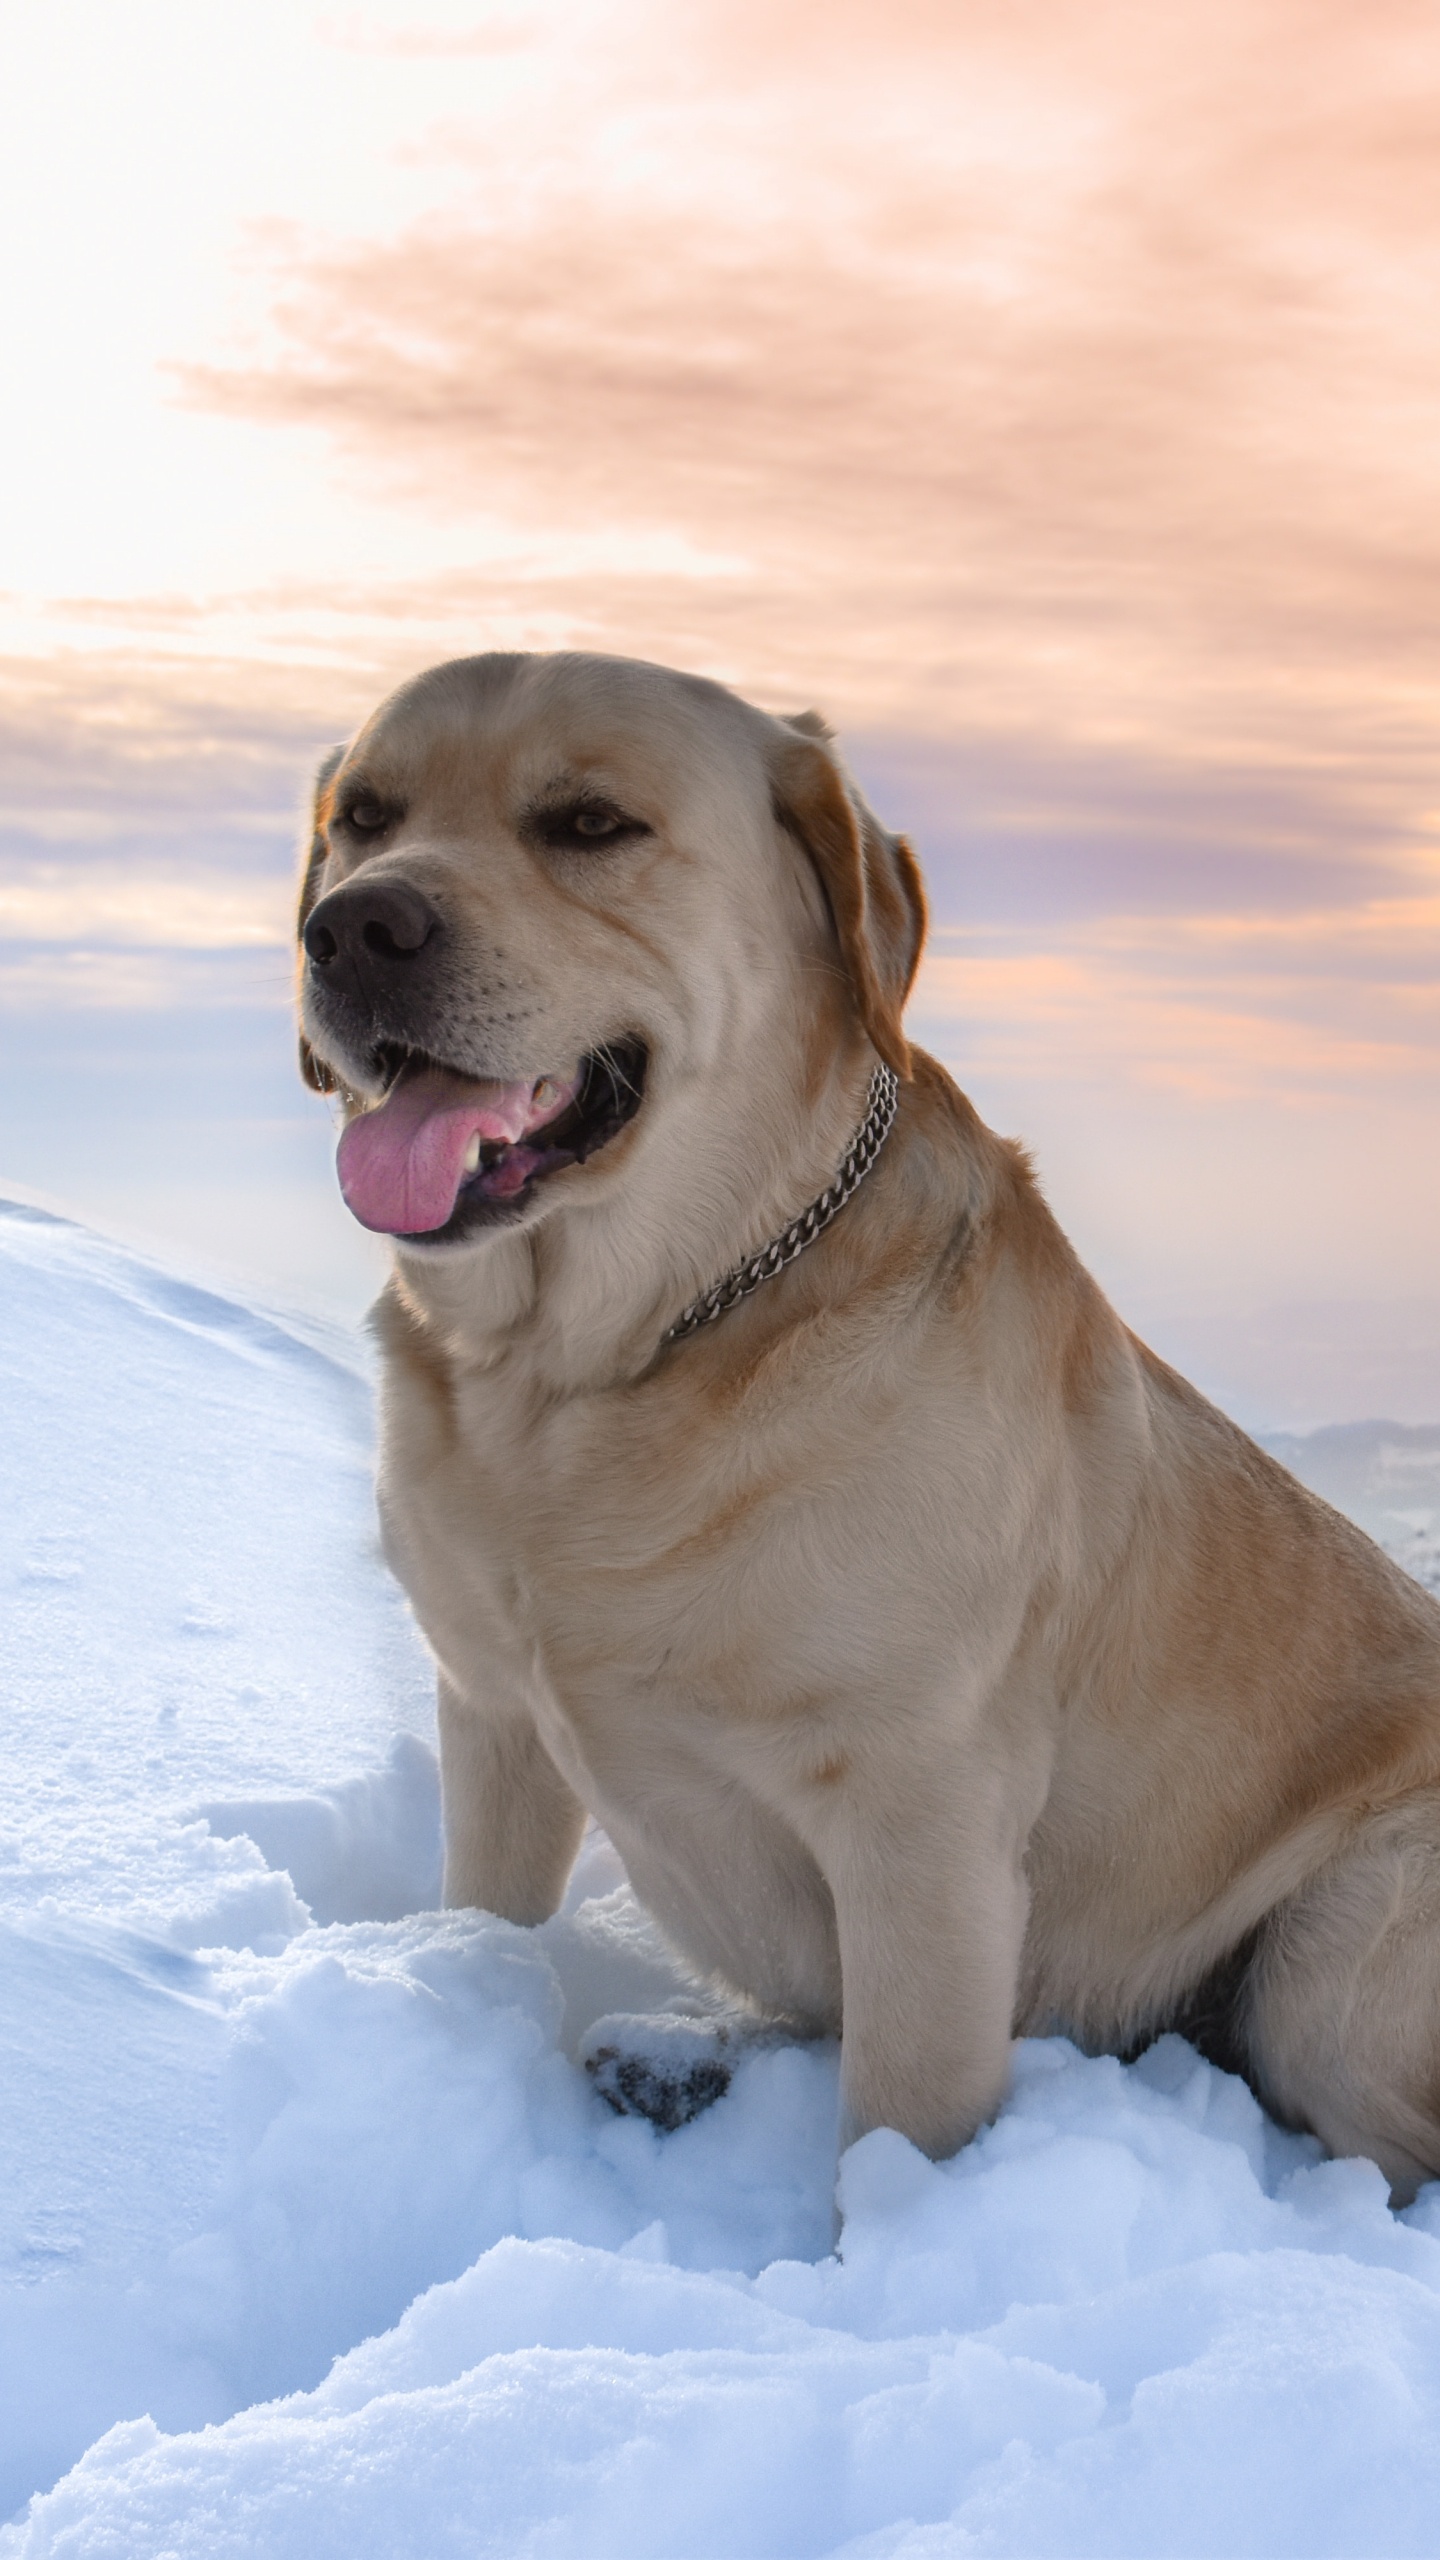 Brauner, Kurzhaariger Hund Auf Schneebedecktem Boden Tagsüber. Wallpaper in 1440x2560 Resolution